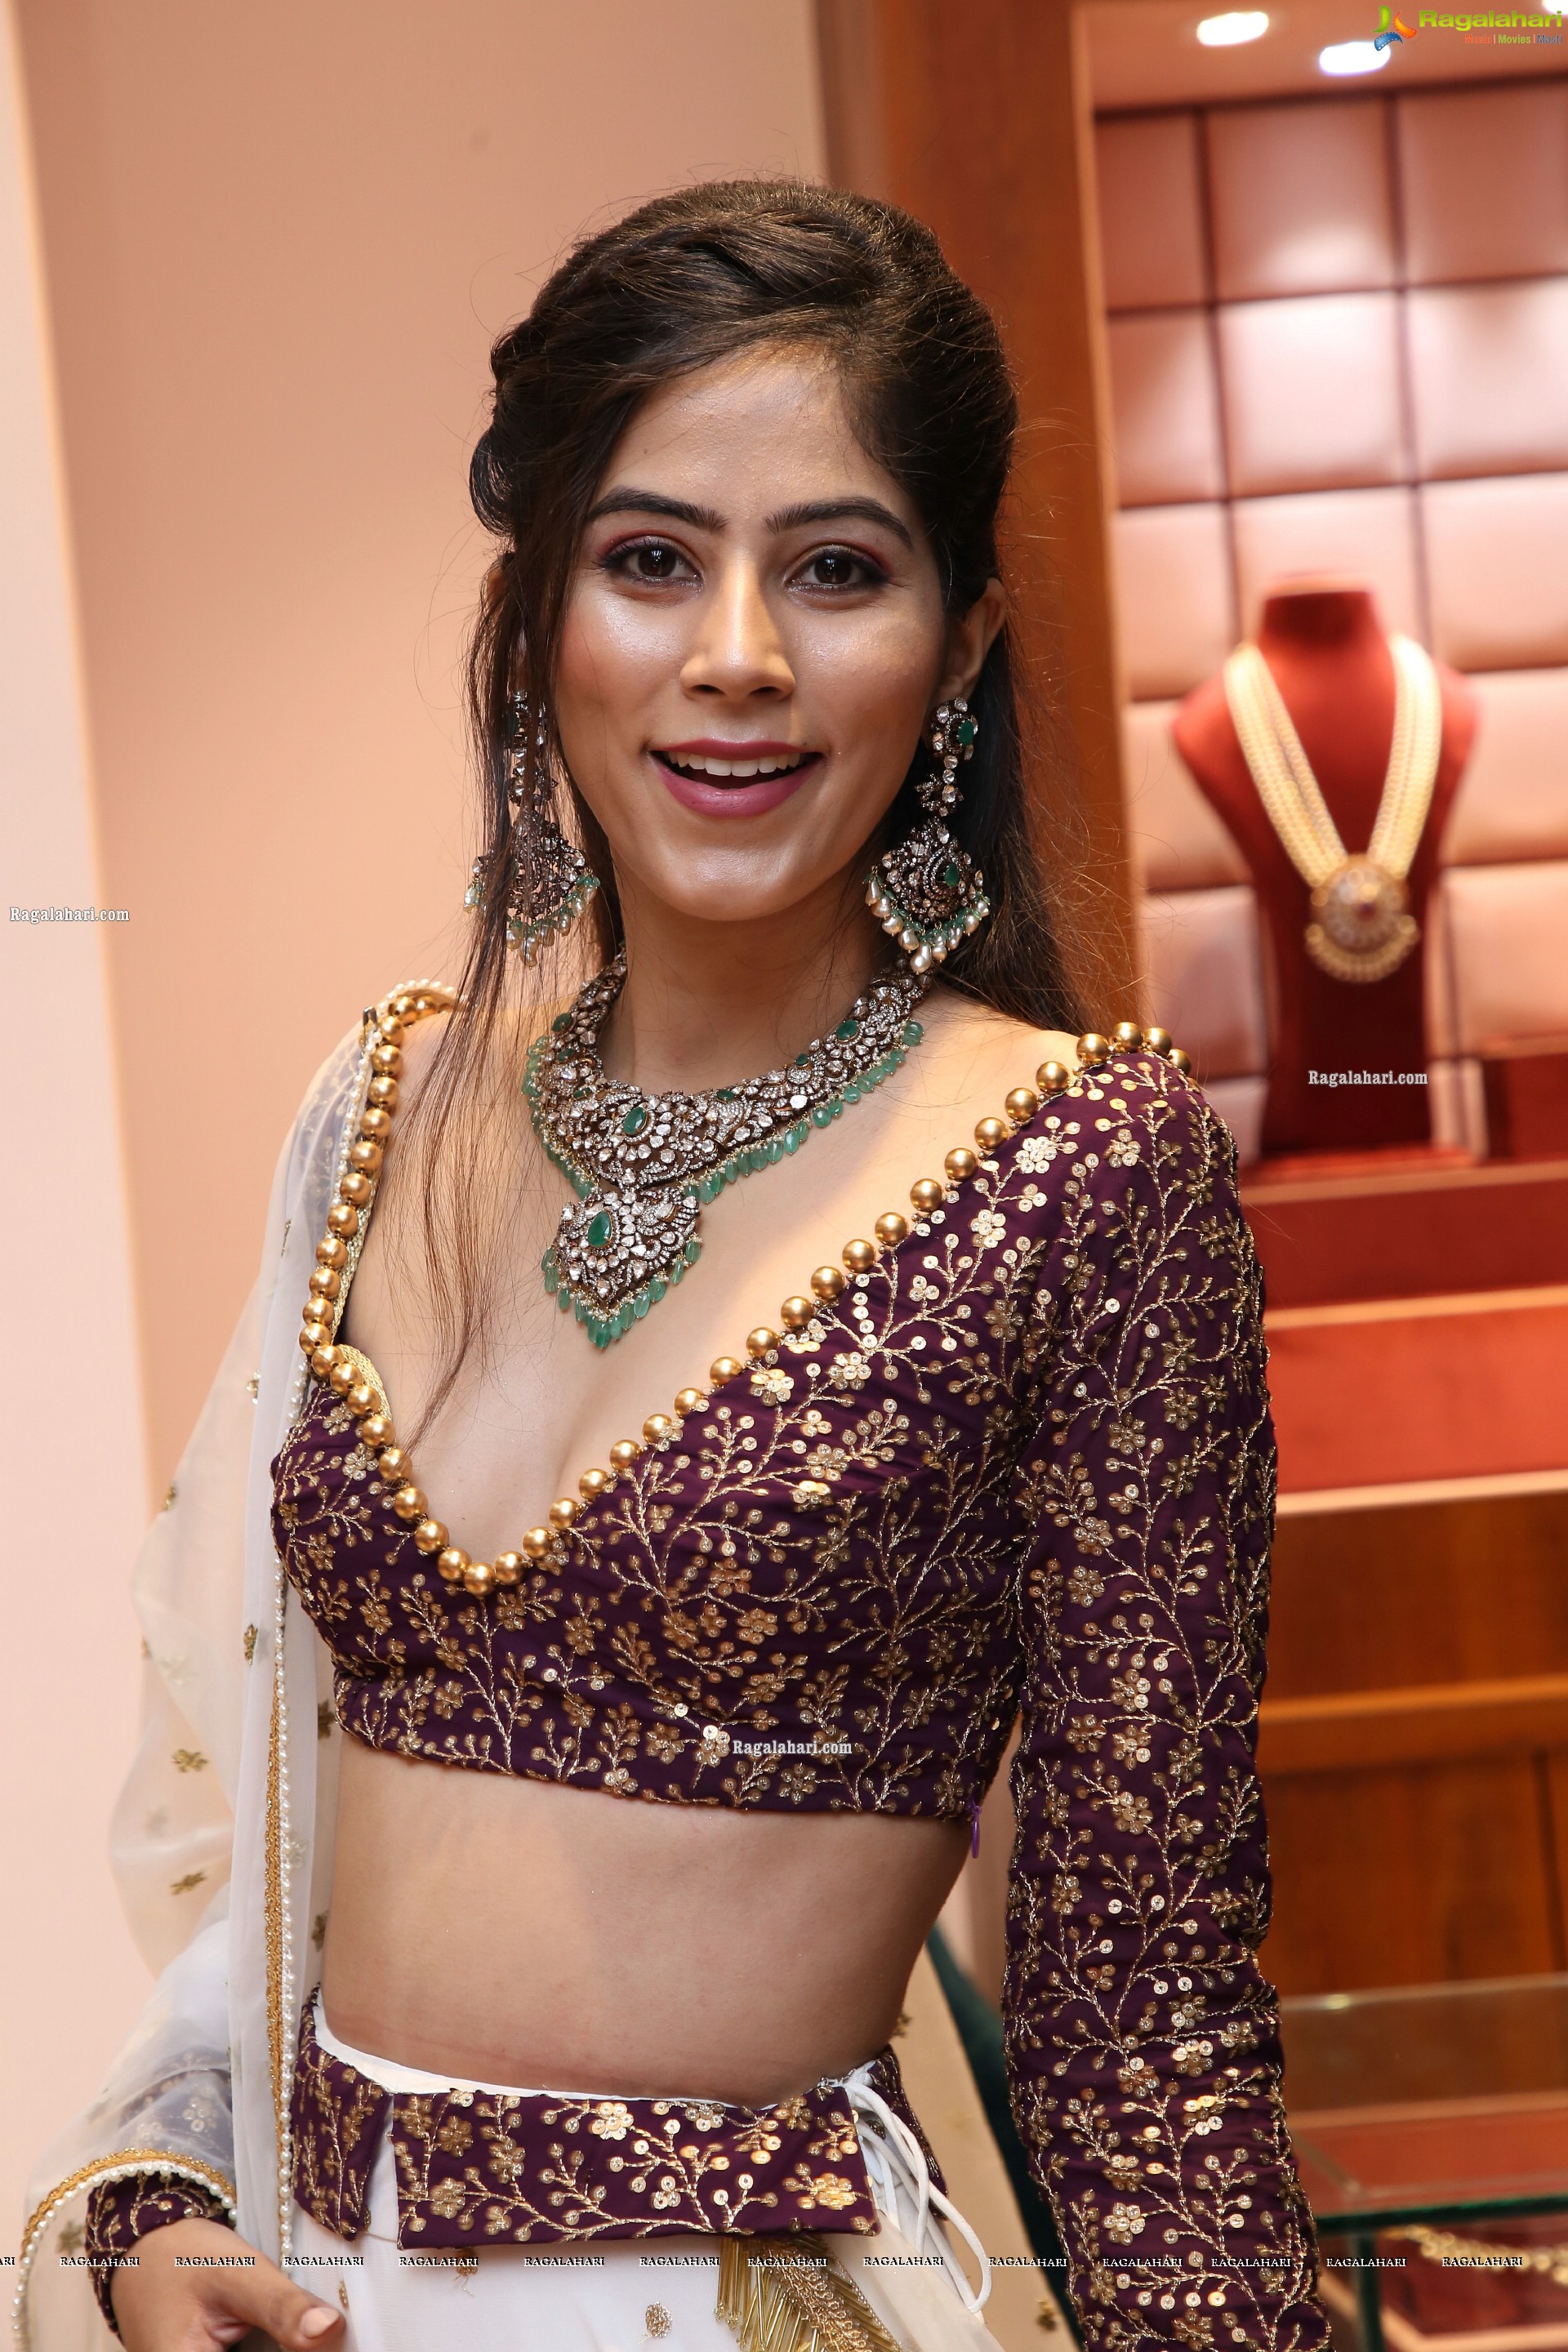 Nikita Tanwani Poses With Gold Jewellery, HD Photo Gallery